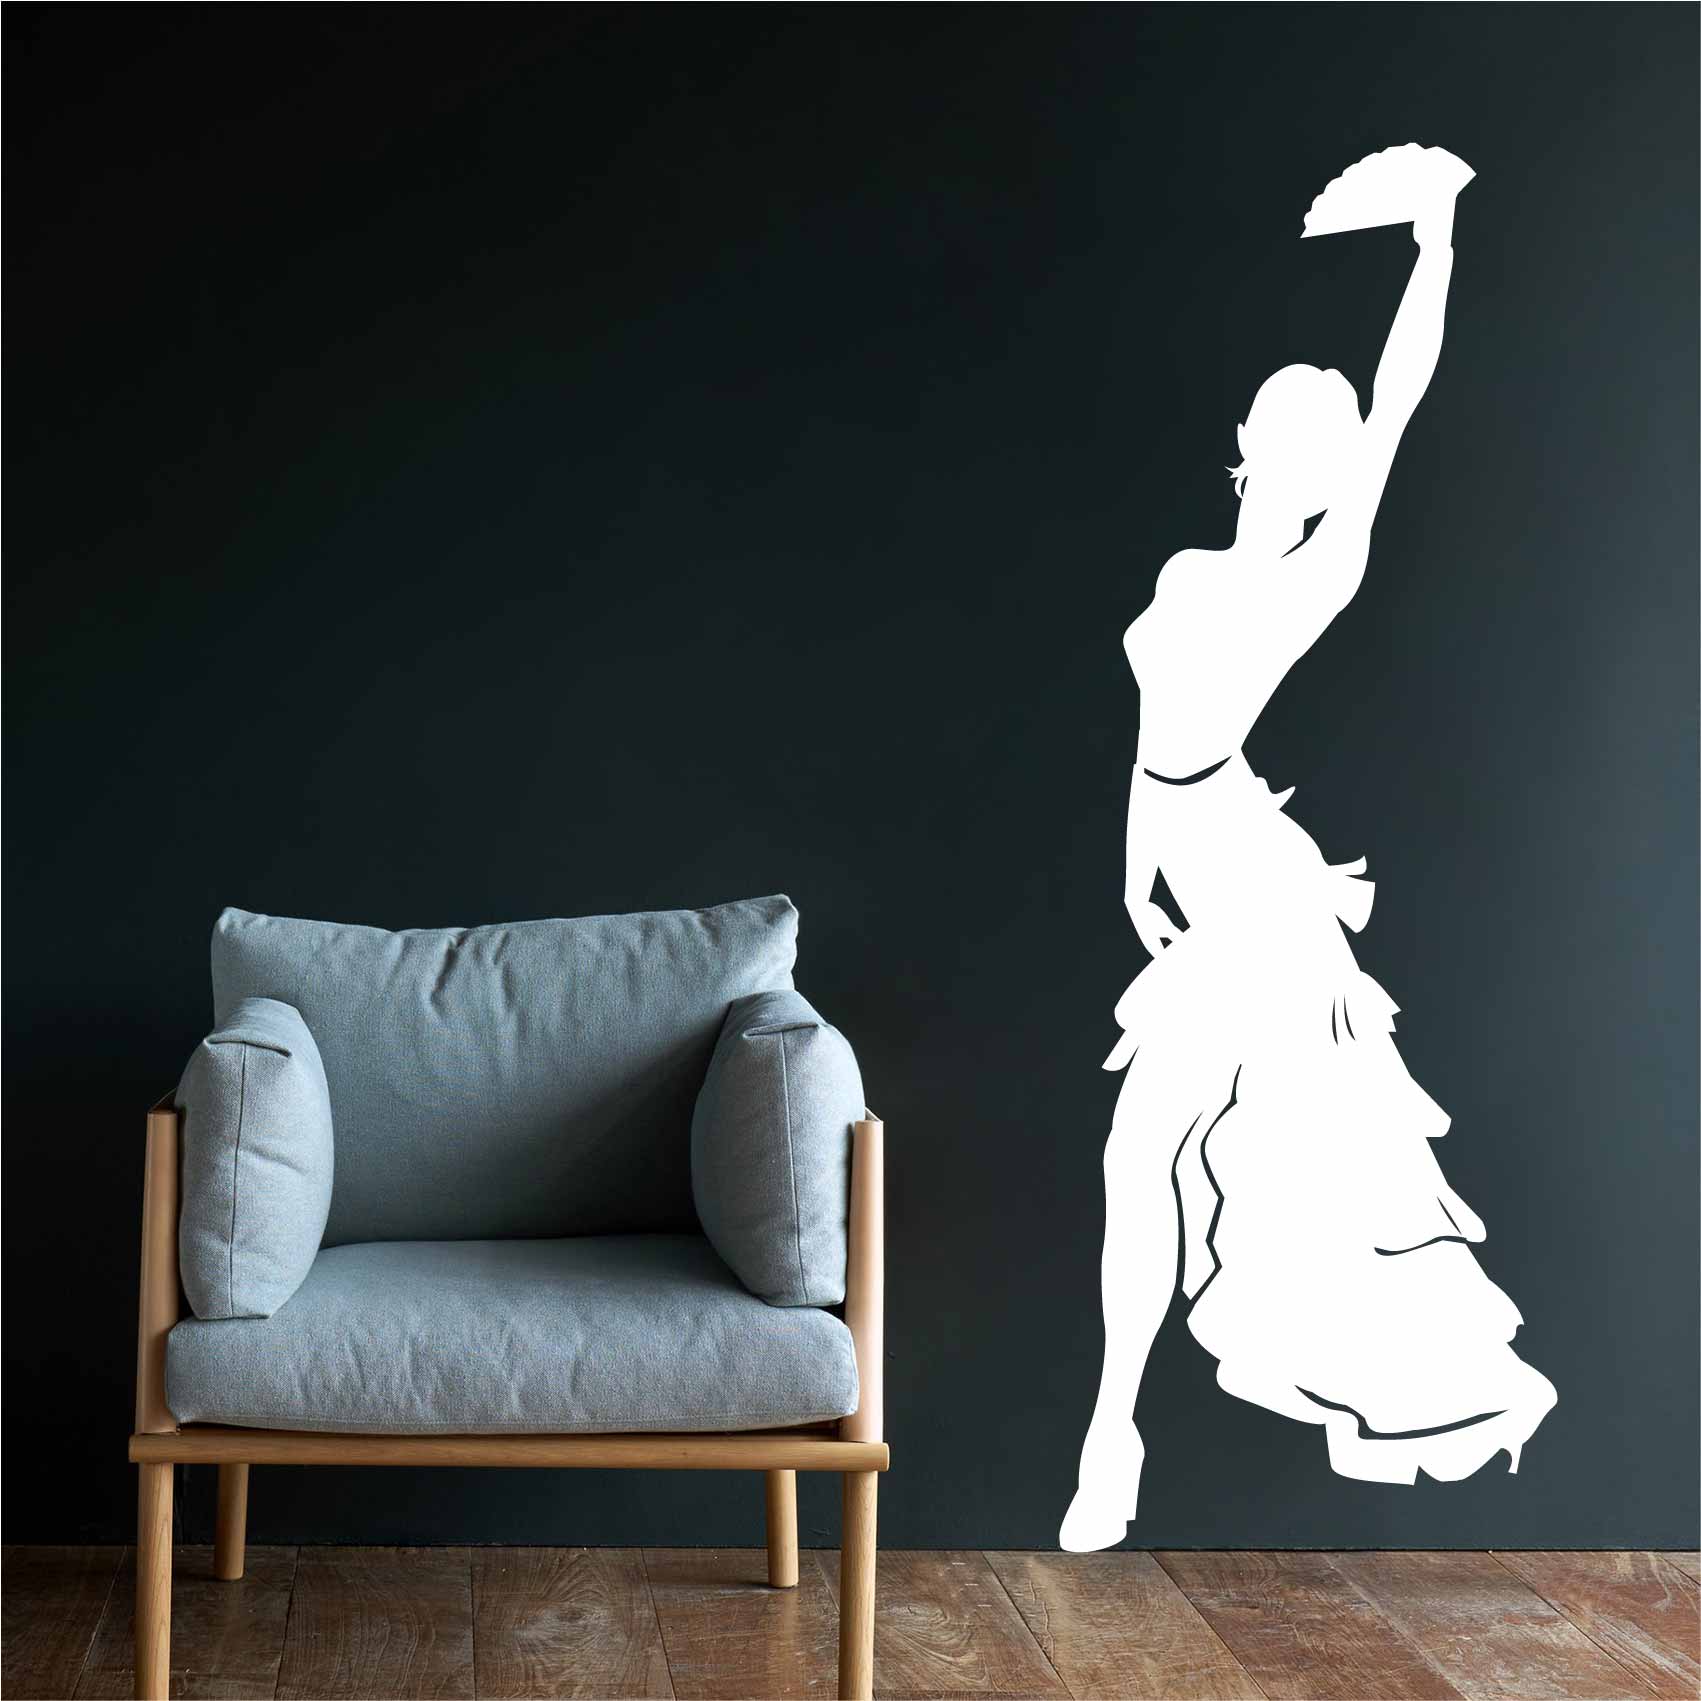 stickers-flamenco-ref36silhouette-stickers-muraux-silhouette-autocollant-chambre-salon-sticker-mural-ombre